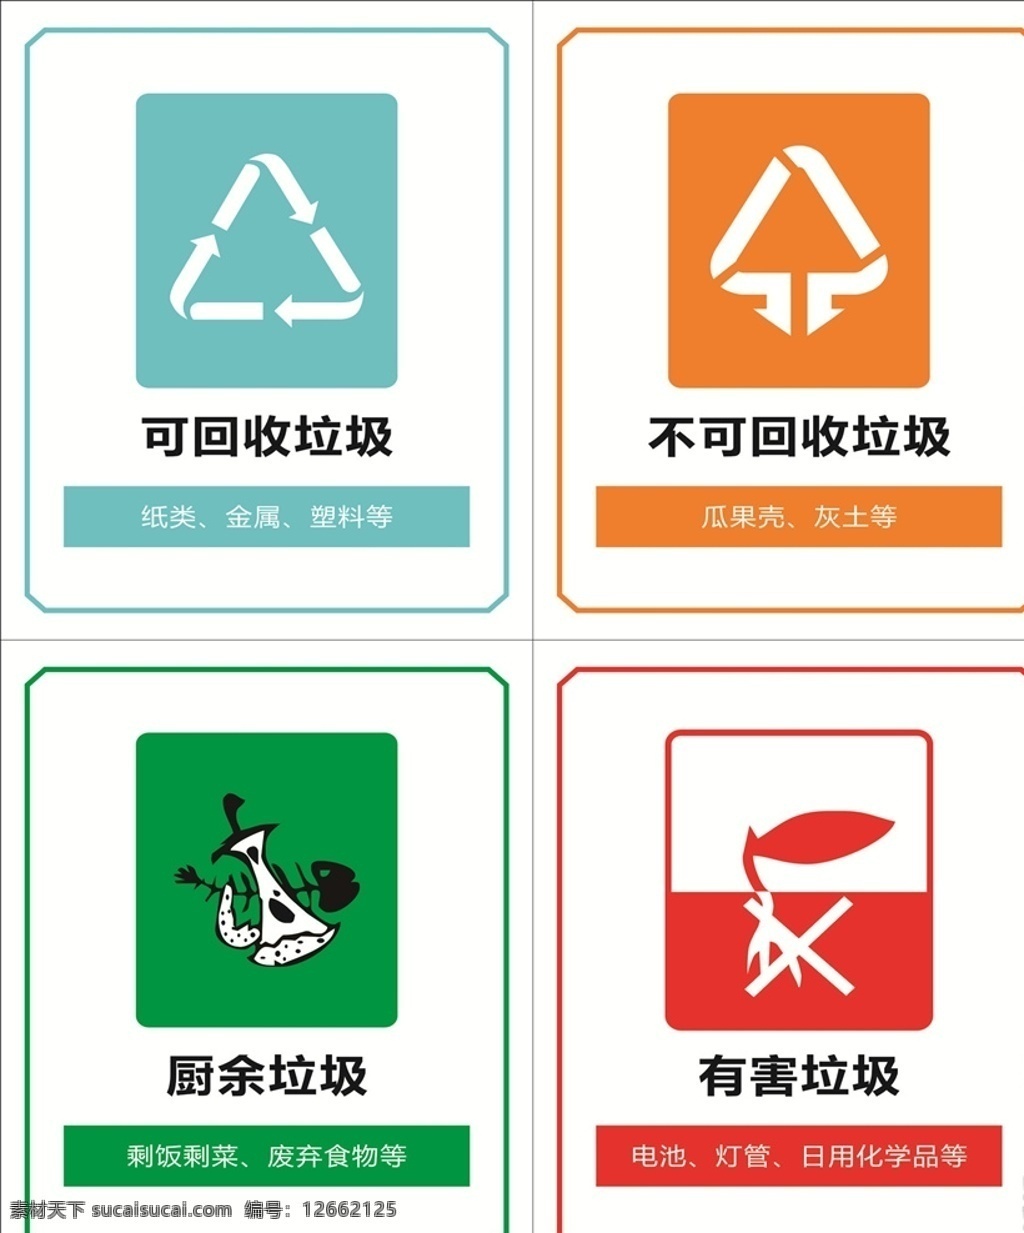 垃圾分类标签 垃圾分类 垃圾标签 垃圾桶贴纸 垃圾桶分类 不可回收垃圾 厨余垃圾 可回收垃圾 有害垃圾